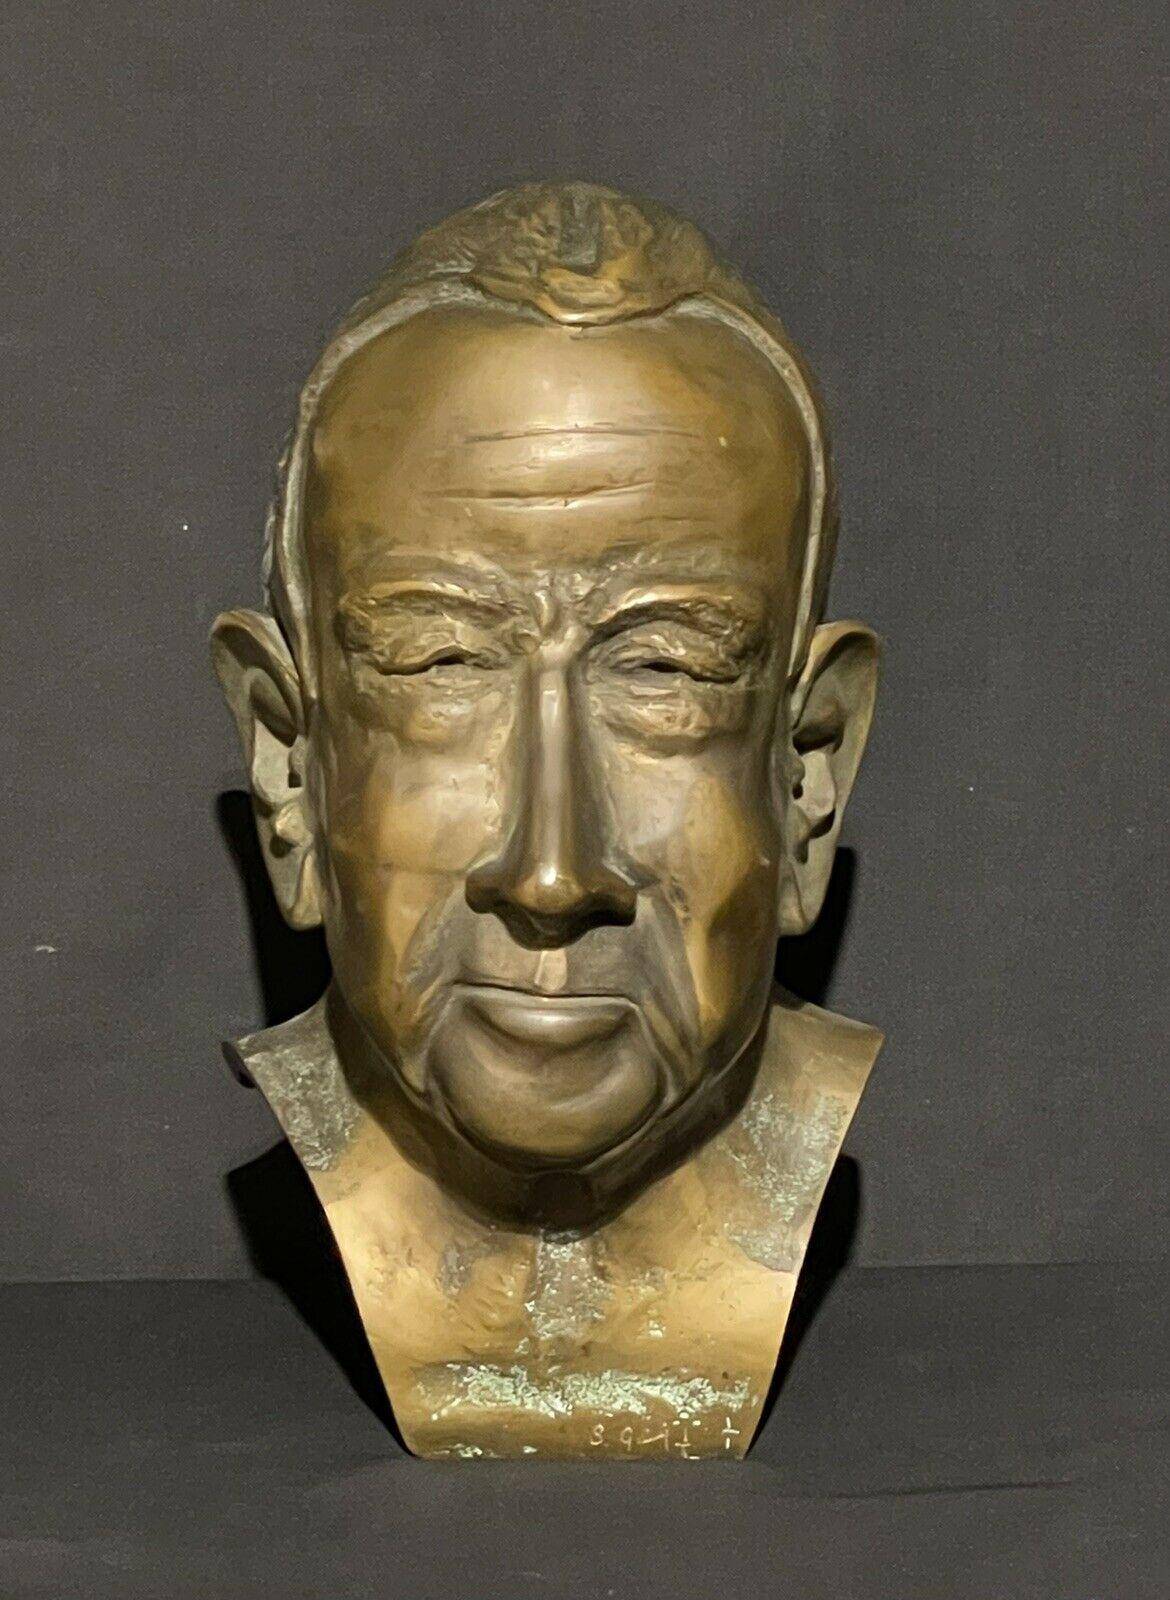 ORIGINAL PERIOD BRONZE HEAD SCULPTURE PRESIDENT RICHARD NIXON  - Sculpture by Unknown